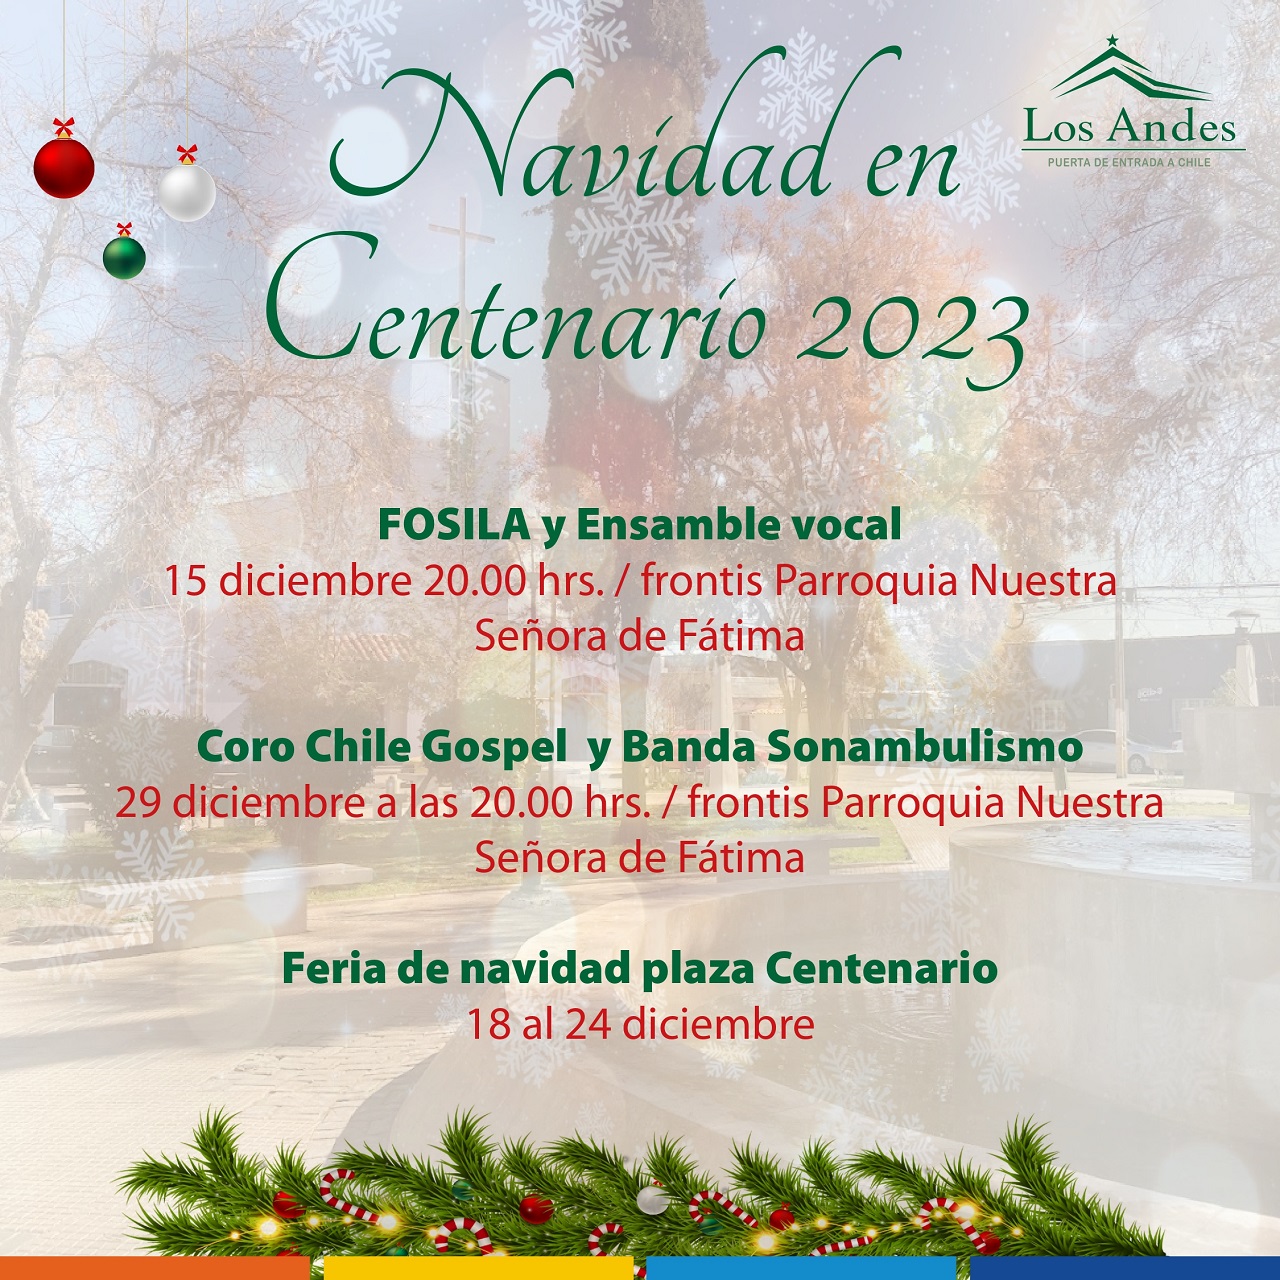 LOS ANDES: Municipio andino apoya la realización de la Navidad en Centenario